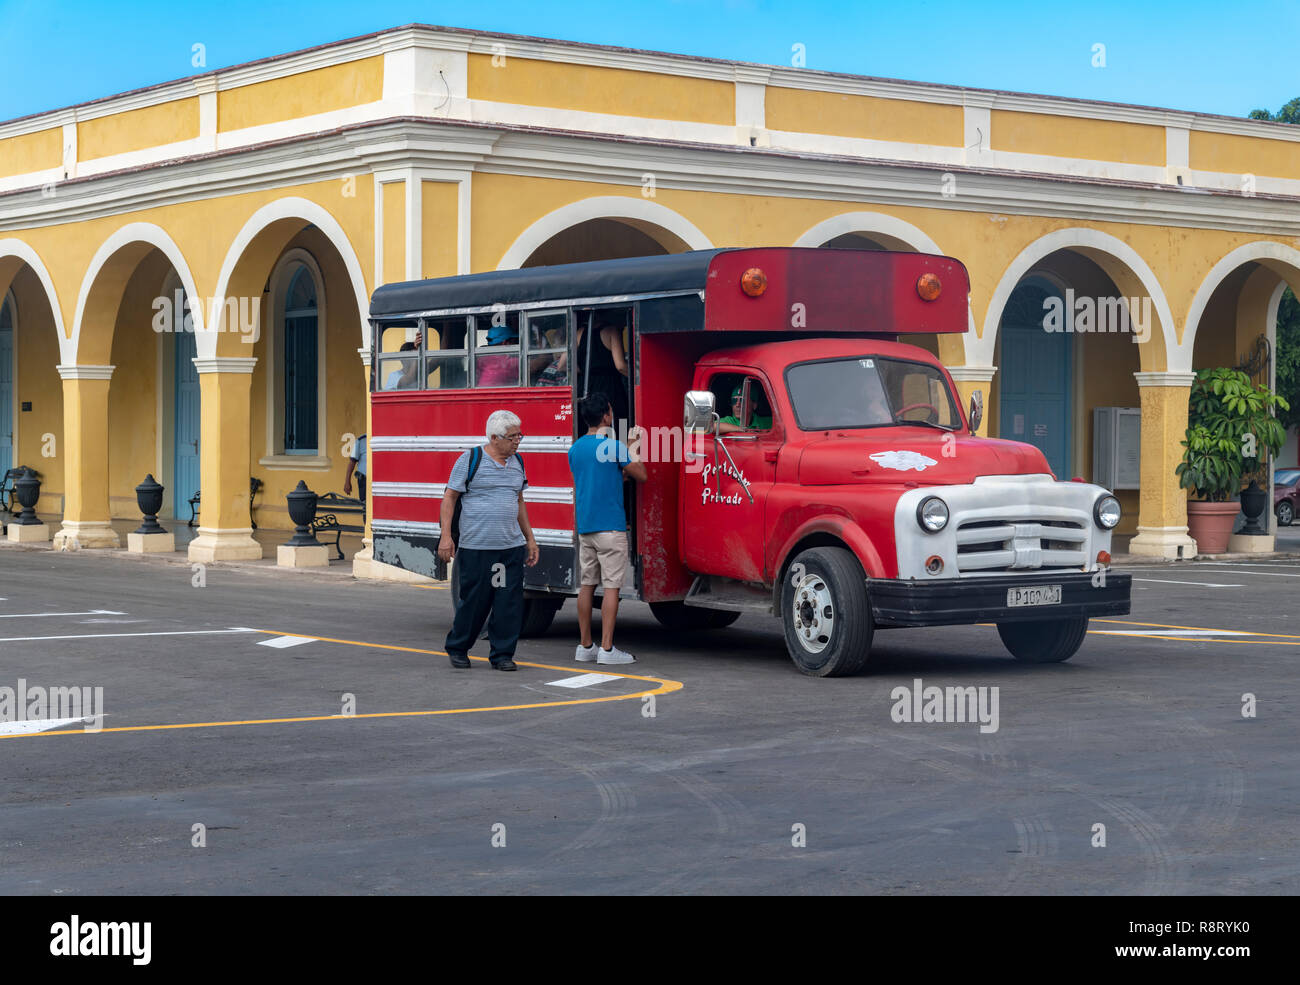 Bus privato prelevare i passeggeri al di fuori del cimitero di Colon, Havana Cuba. Le parole sul bus dire 'porteador privado' che significa vettore privato. Foto Stock